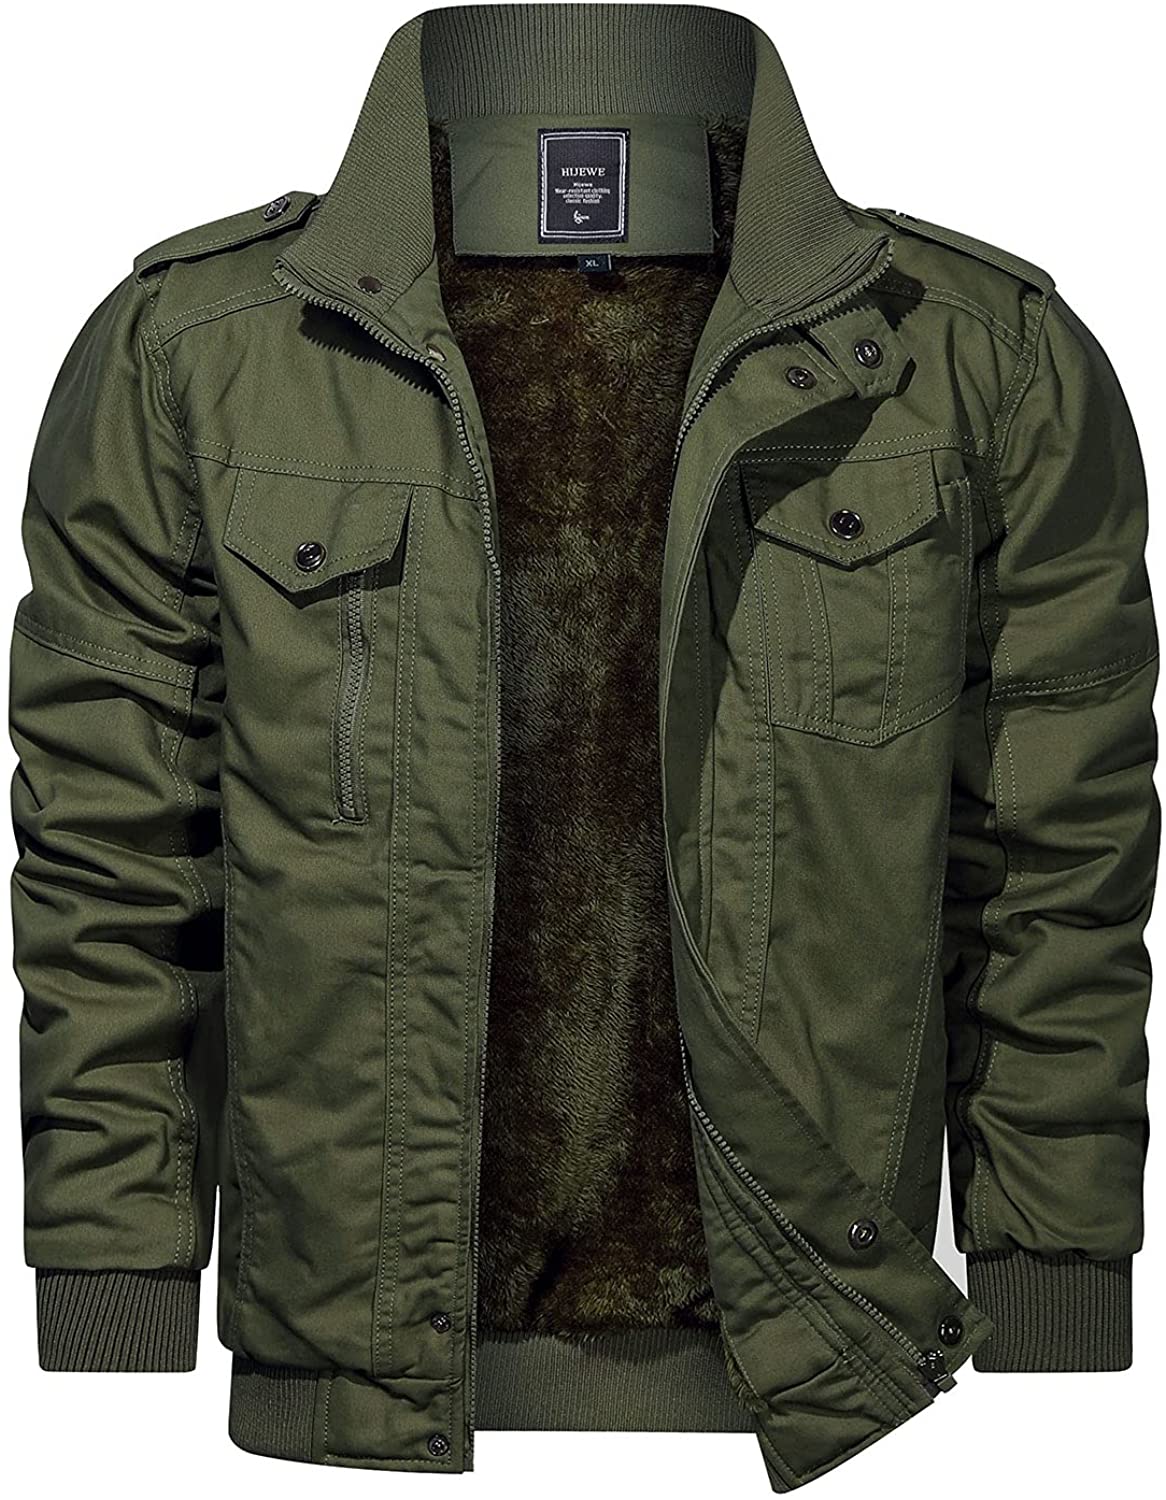 CRYSULLY Men's Winter Casual Thicken Multi-Pocket Field Jacket Outwear Fleece Cargo Jackets Coat 